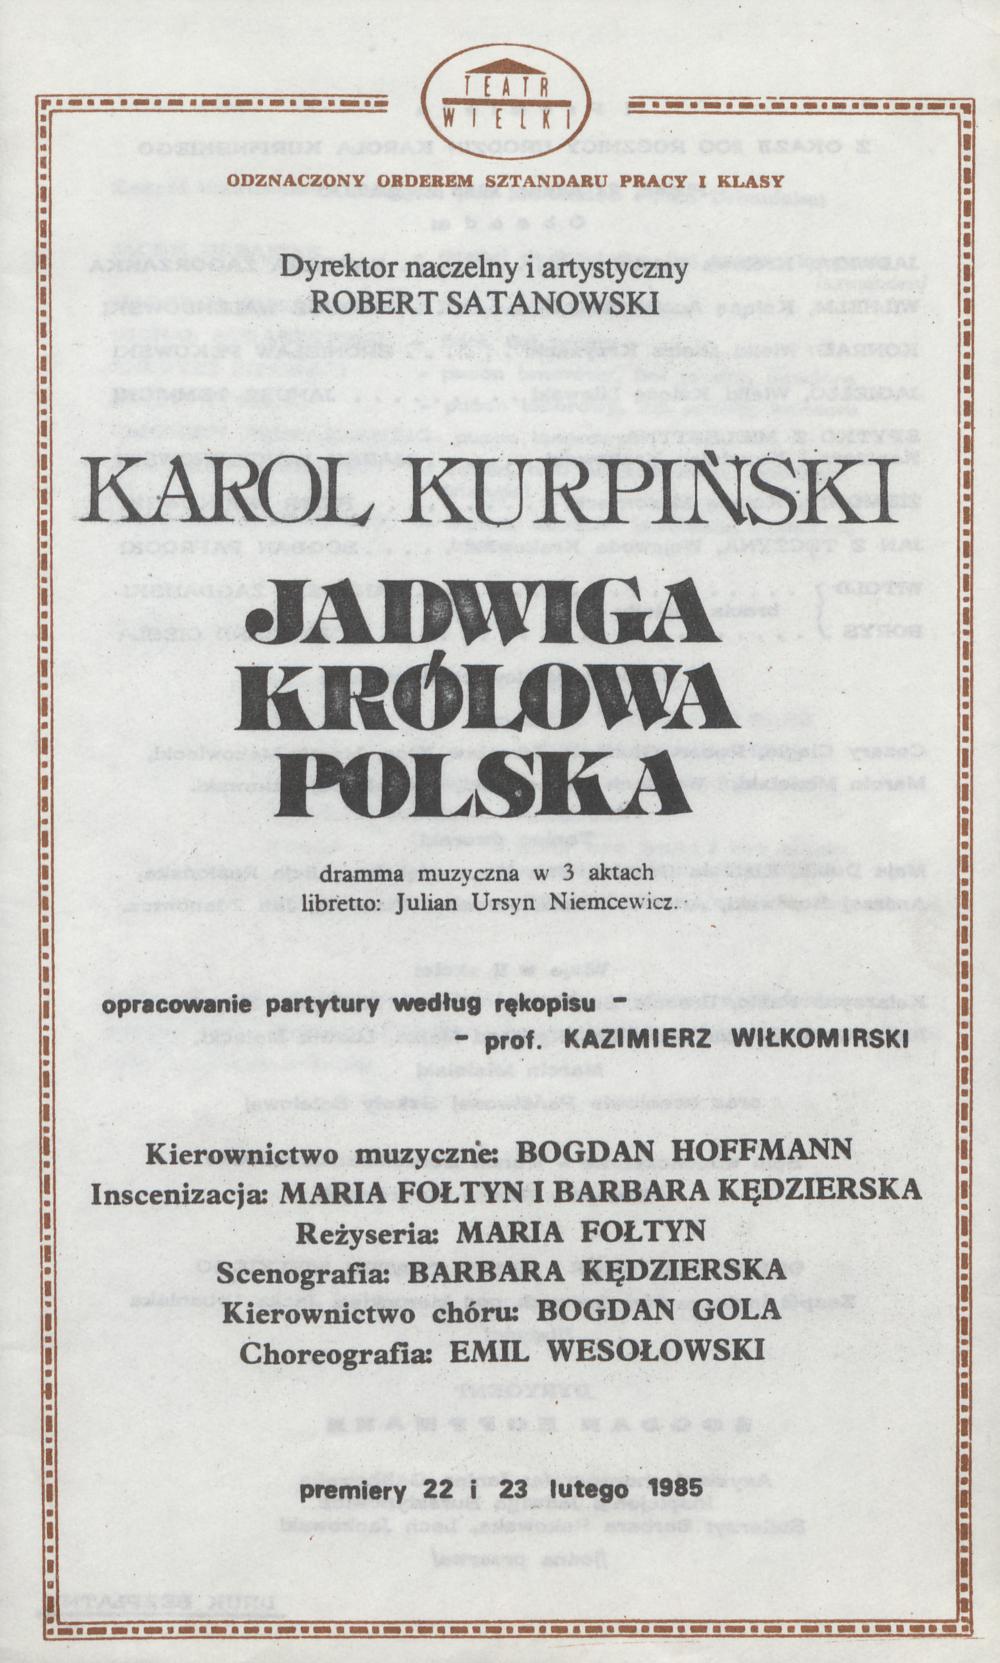 Wkładka obsadowa.„Jadwiga Królowa Polska” Karol Kurpiński 22-02-1985.